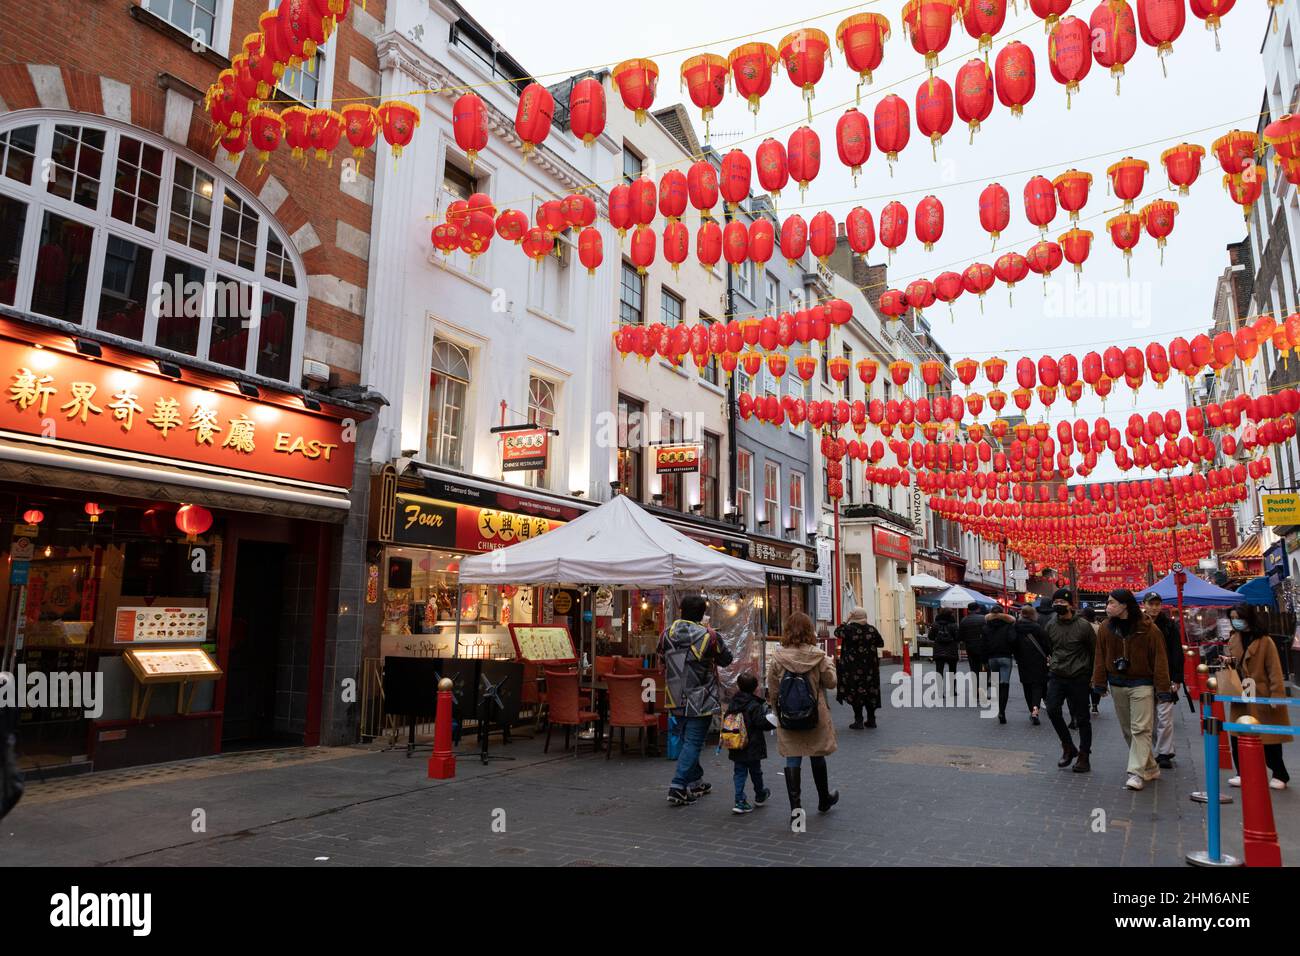 Vue générale de Gerrard Street à China Town, Londres pendant le nouvel an chinois. Banque D'Images